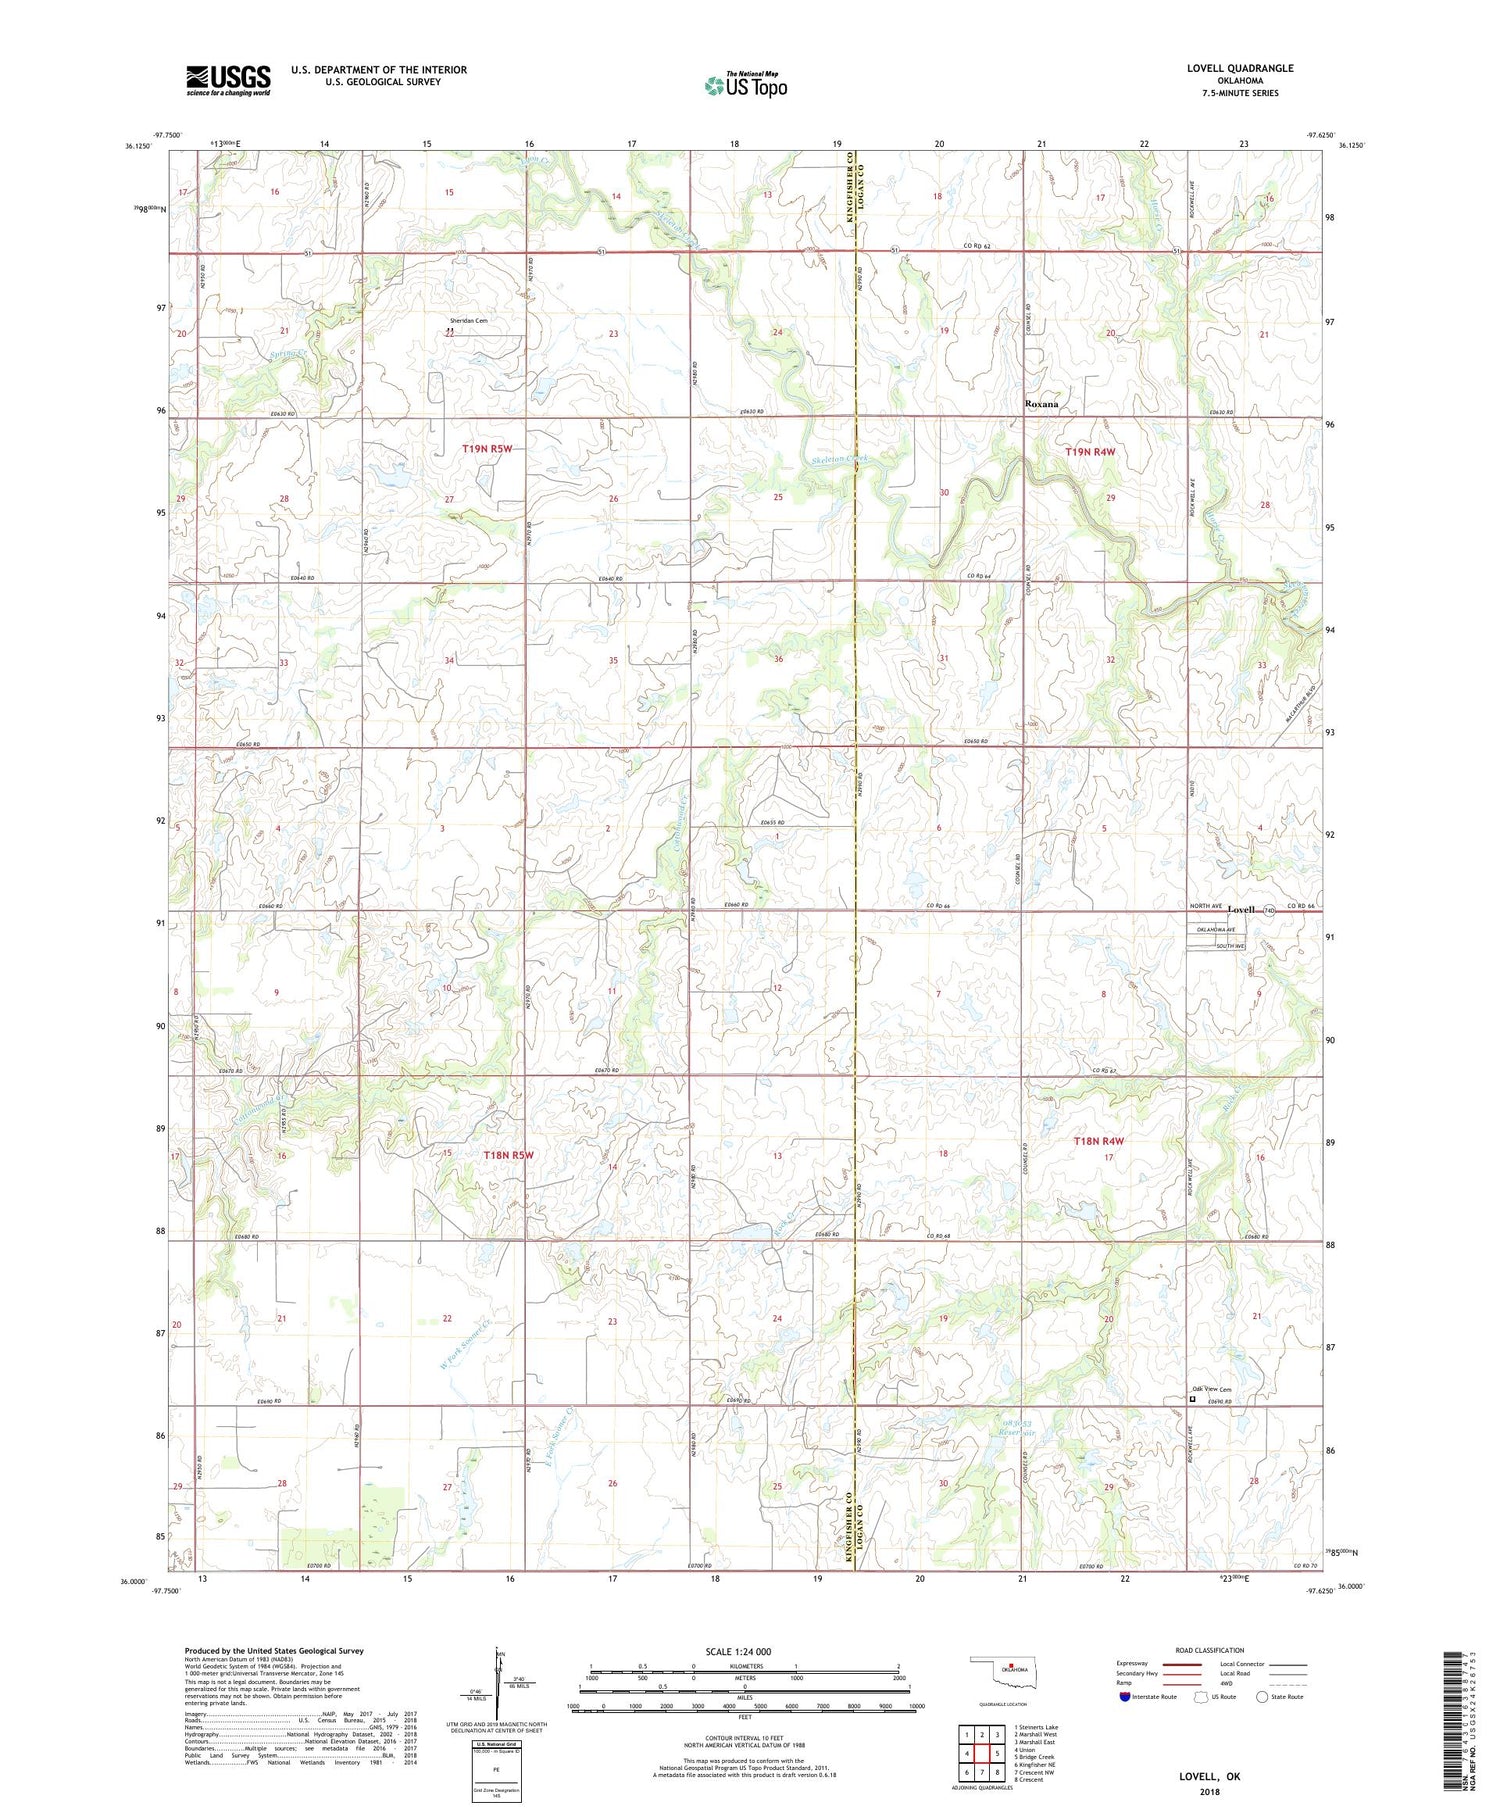 Lovell Oklahoma US Topo Map Image